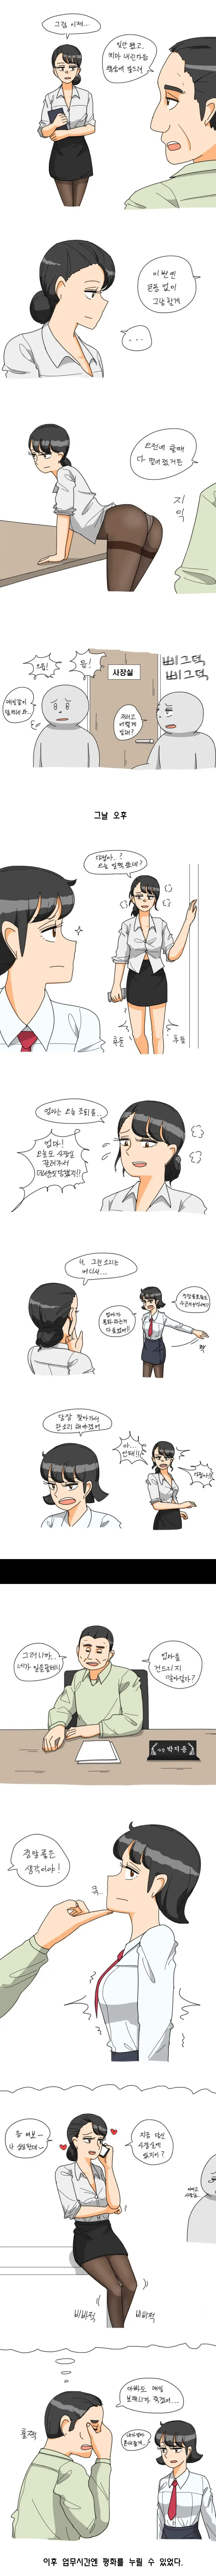 ㅇㅎ) 유부녀 비서가 매일 사장실에 불려가는 만화 | mbong.kr 엠봉